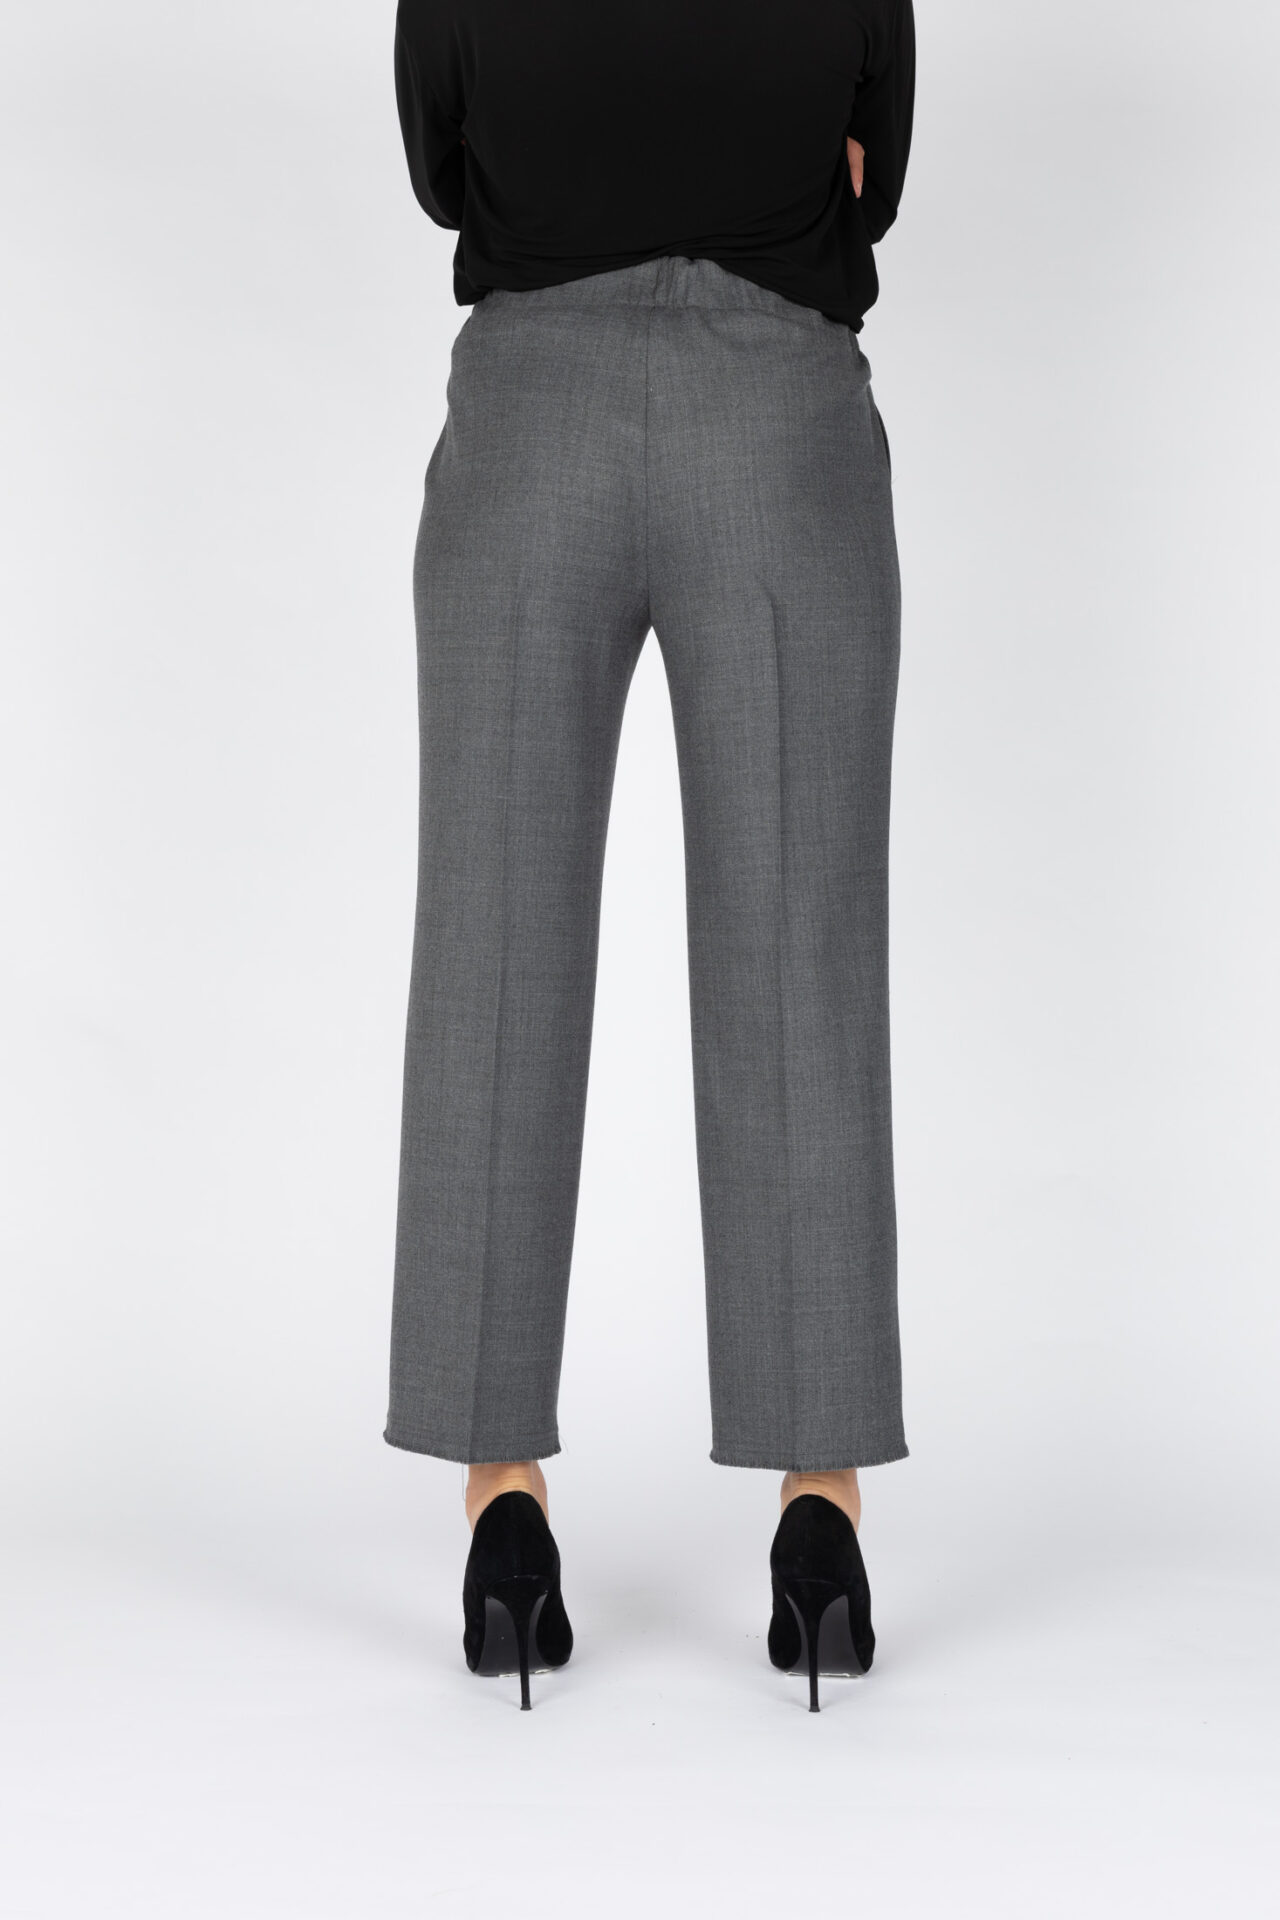 Pantalone da donna gamba dritta colore grigio